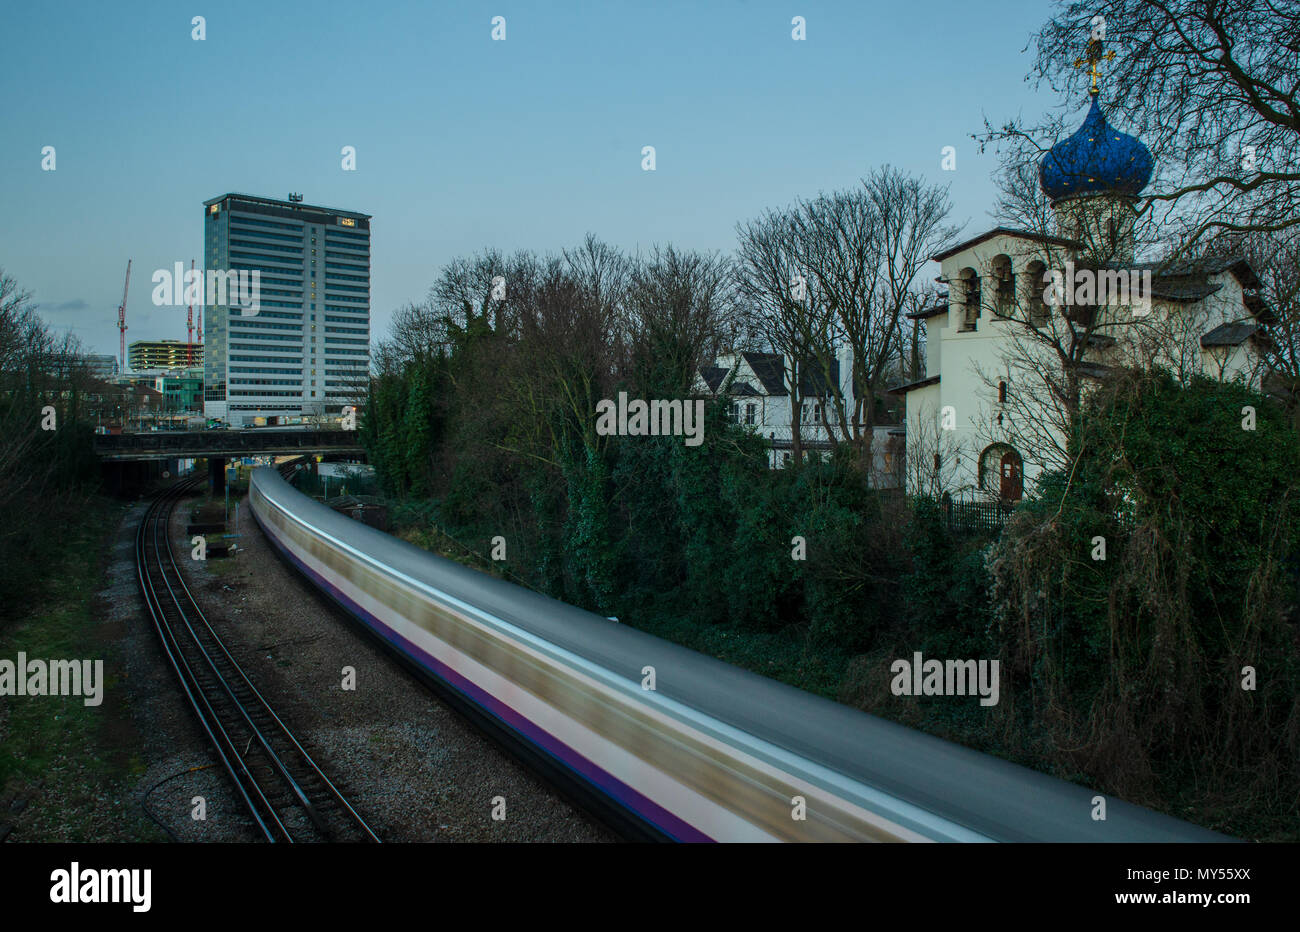 London, England, UK - Februar 2, 2014: ein Londoner U-Bahn Linie Zug geht durch einen Schnitt bei Gunnersbury in West London, neben dem Ru Stockfoto